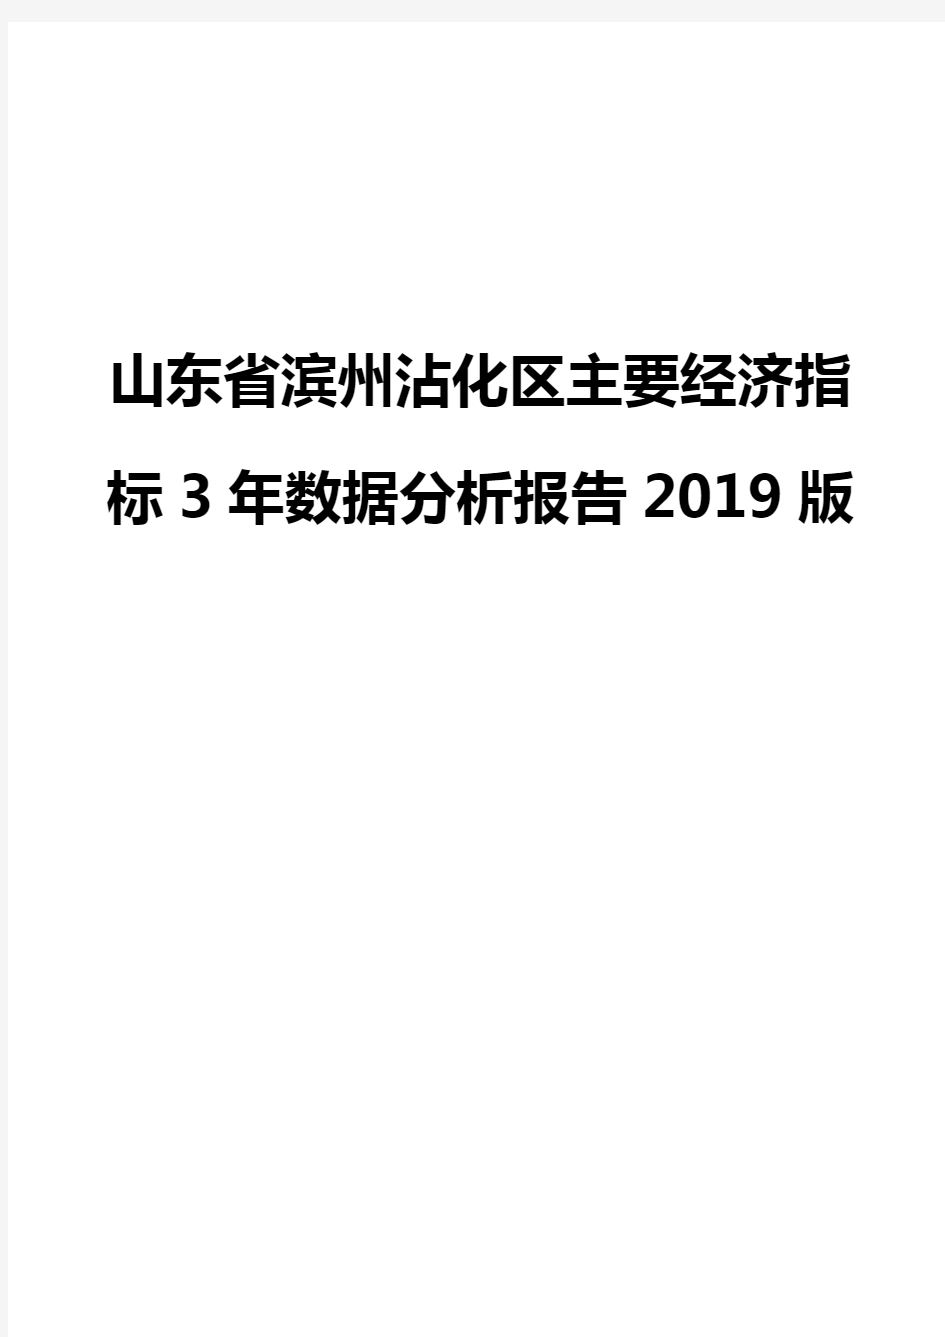 山东省滨州沾化区主要经济指标3年数据分析报告2019版